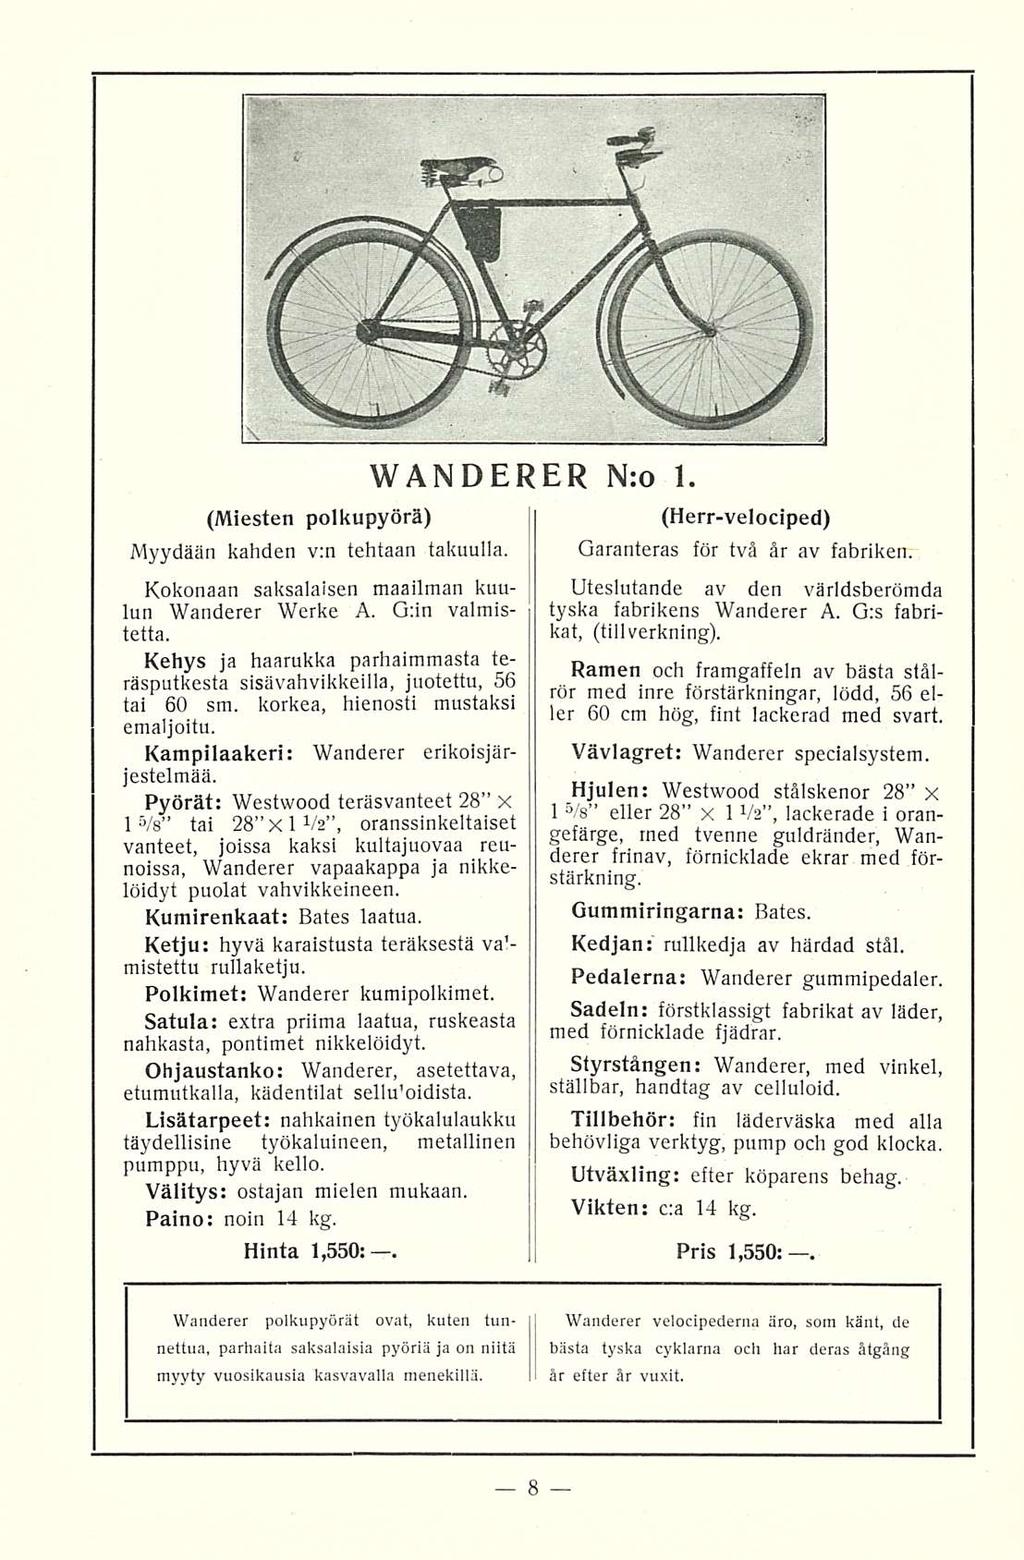 (Miesten polkupyörä) Myydään kahden v:n tehtaan takuulla. Kokonaan saksalaisen maailman kuulun Wanderer Werke A. G:in valmistetta.